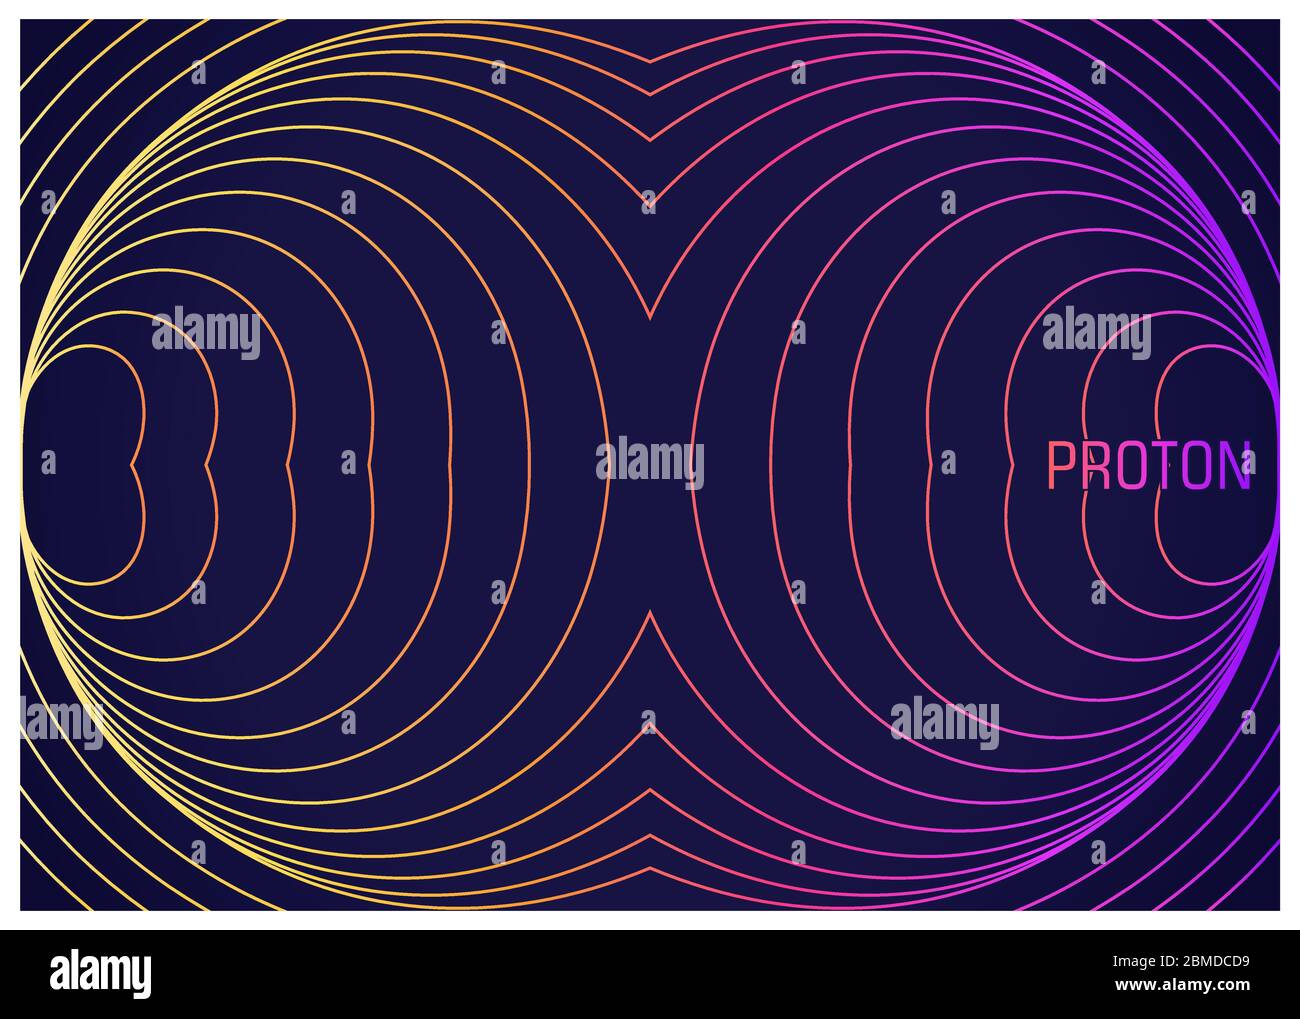 Protone. Composizione colorata con linee ondulate. Immagine astratta di particelle fisiche elementari. Progettazione concettuale la teoria della scienza. Illustrazione vettoriale Illustrazione Vettoriale